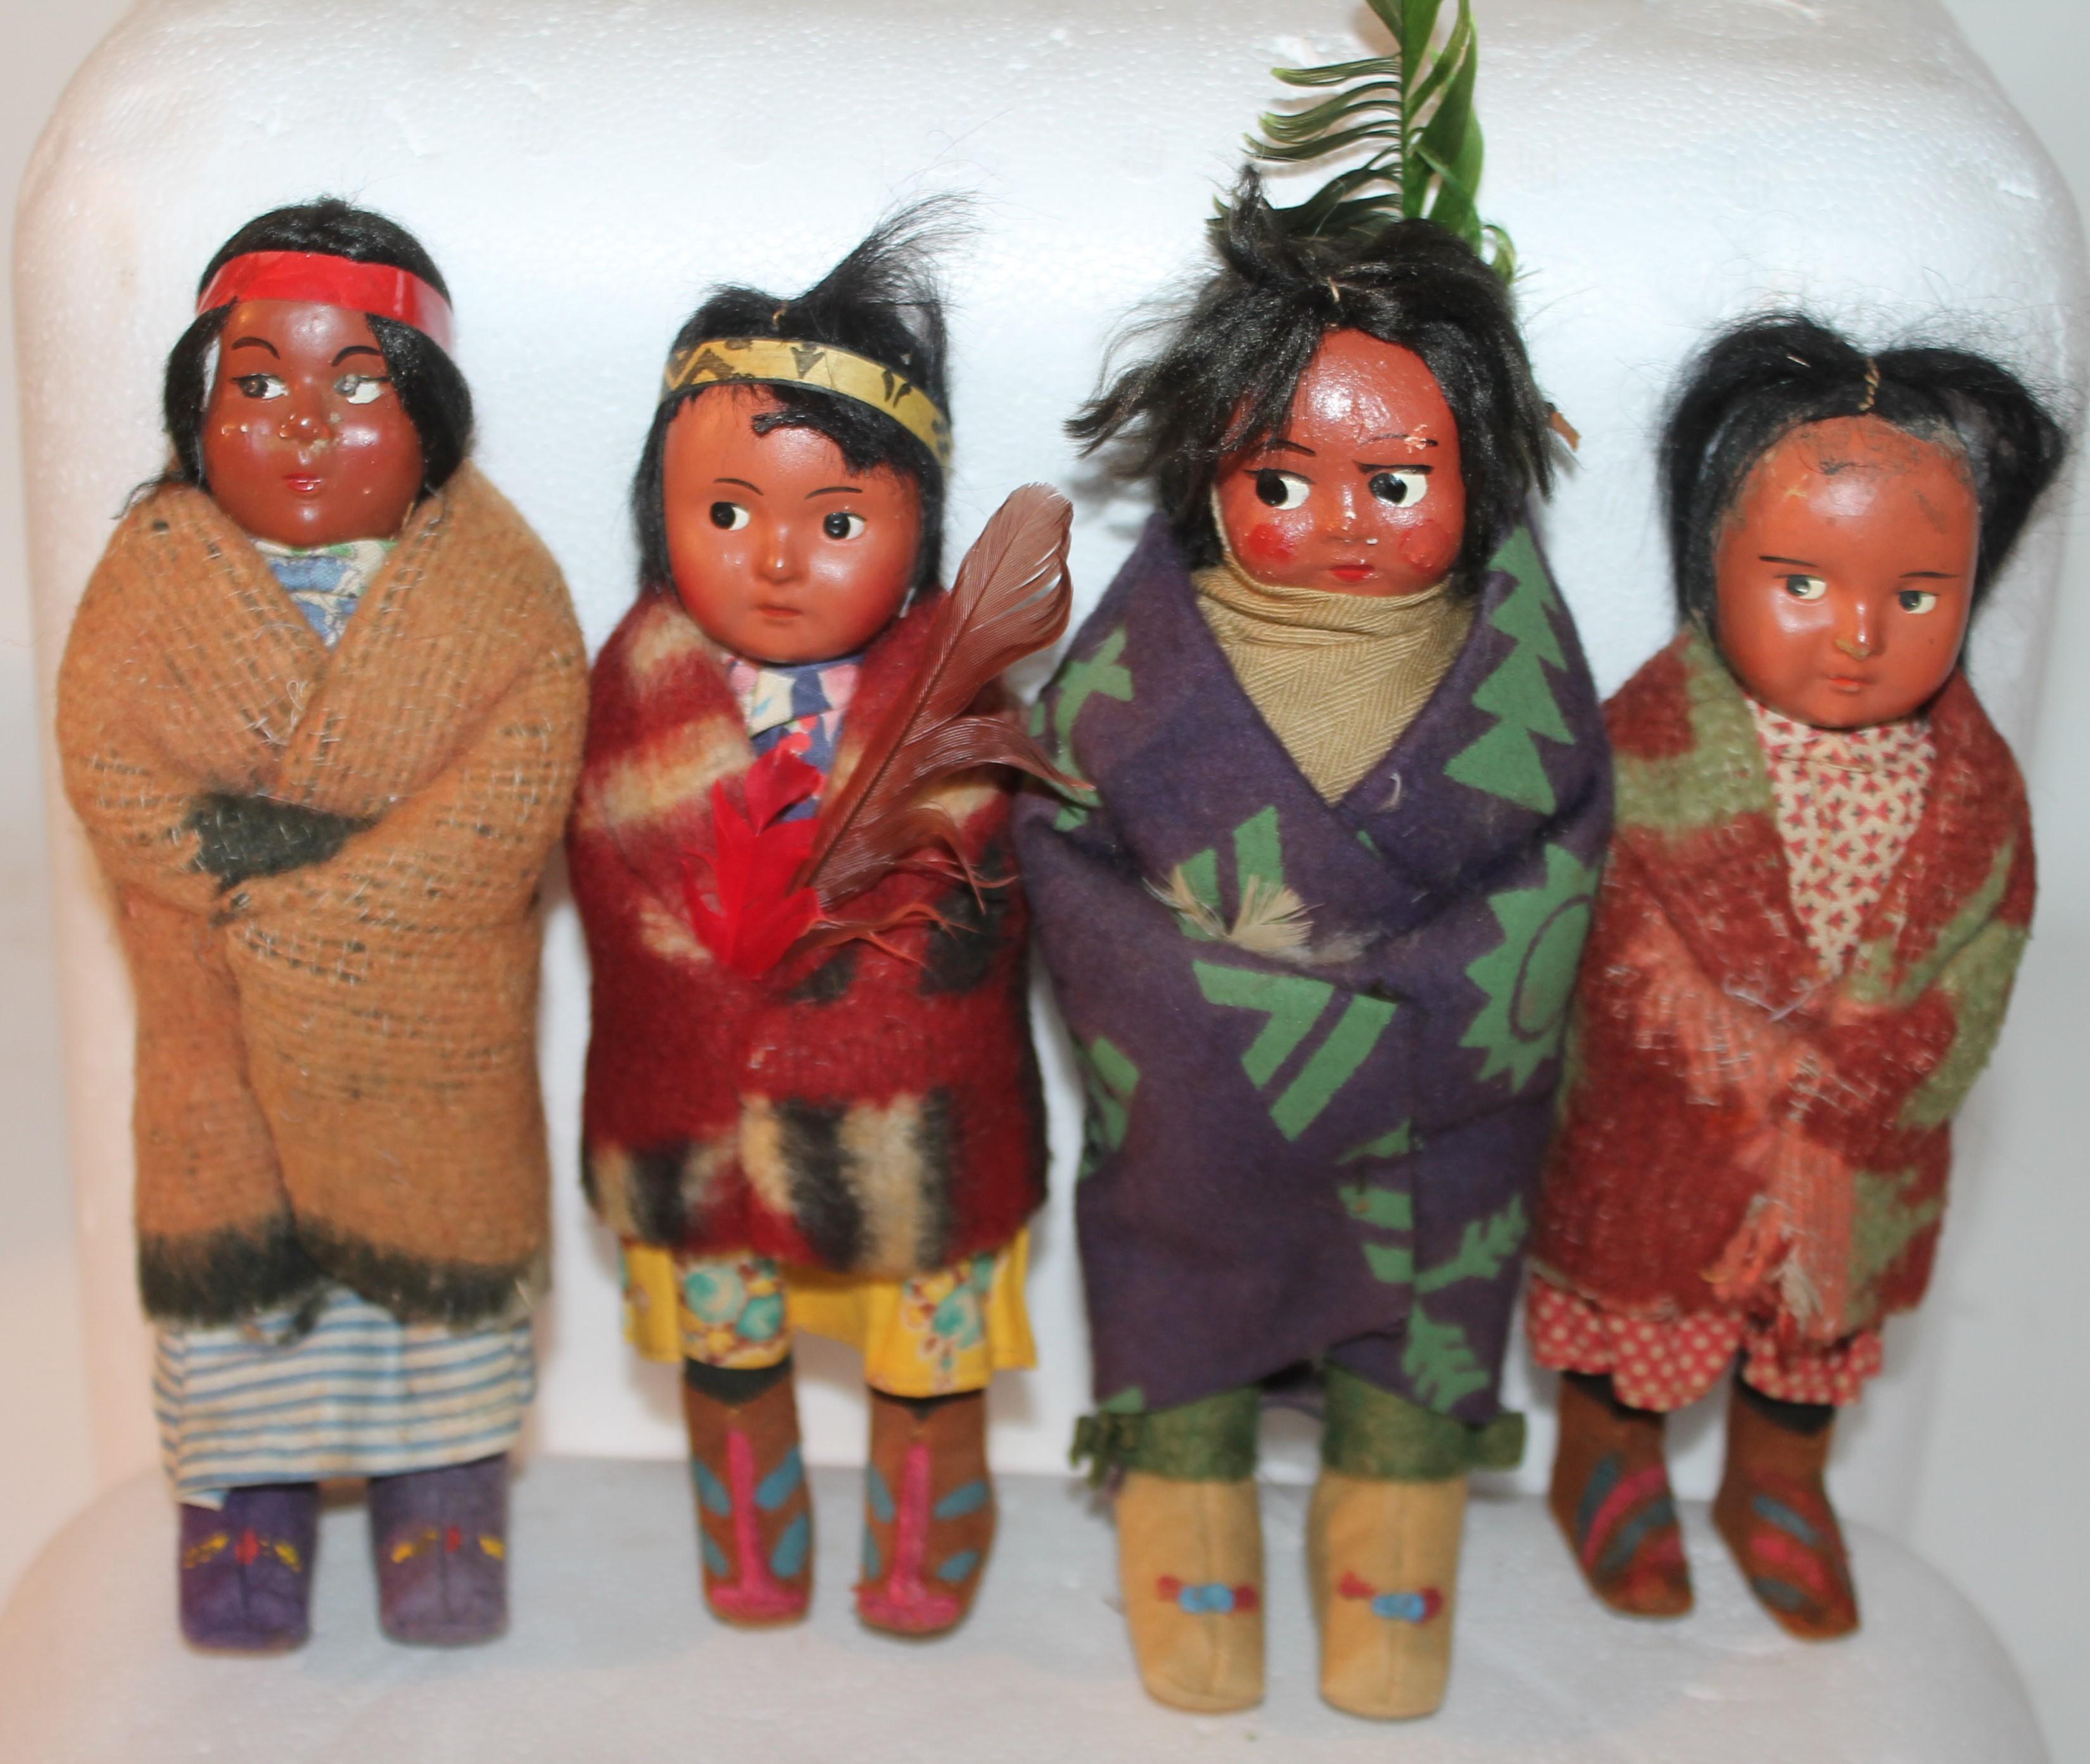 1930's dolls